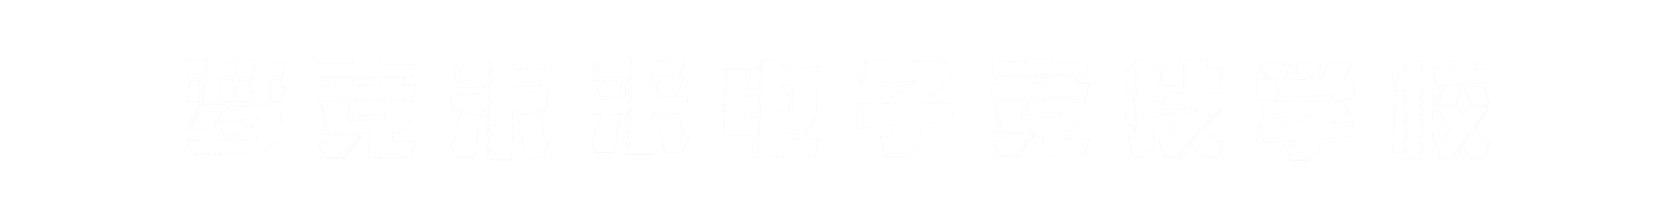 梦竞未来滨州banner字